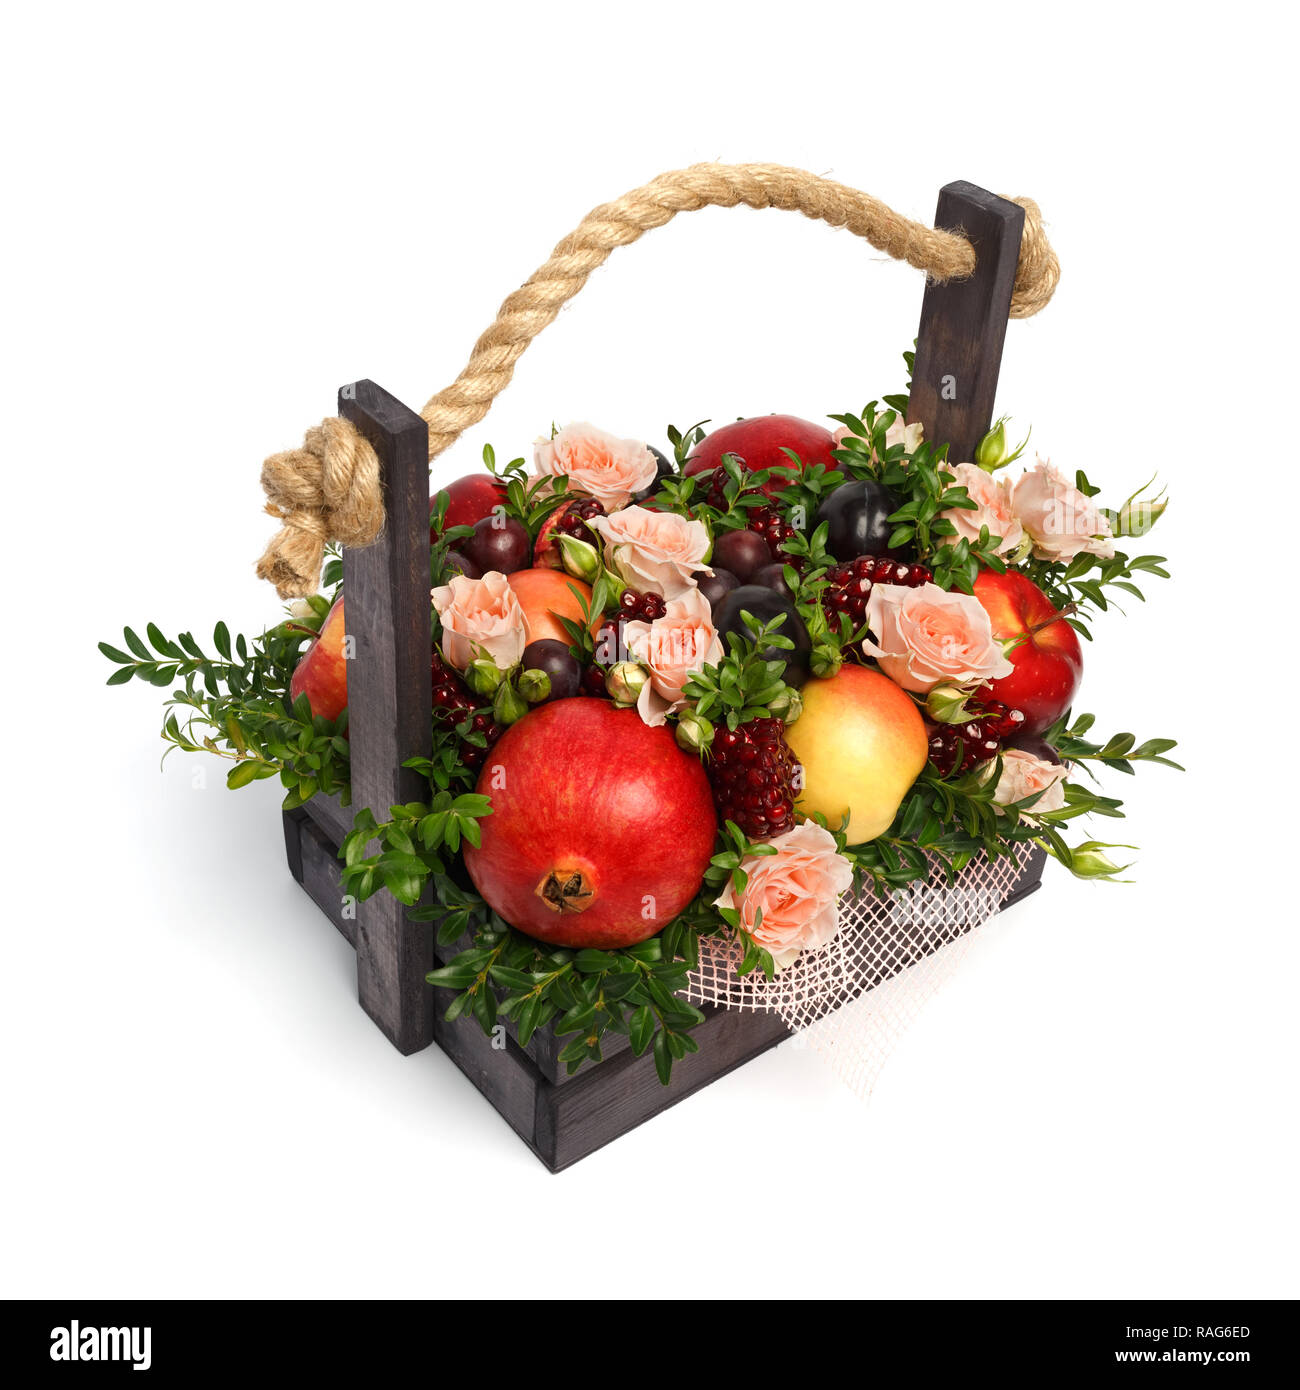 Ein originelles Geschenk an einen Vegetarier in Form eines Blumenstraußes  aus napakohl Stockfotografie - Alamy